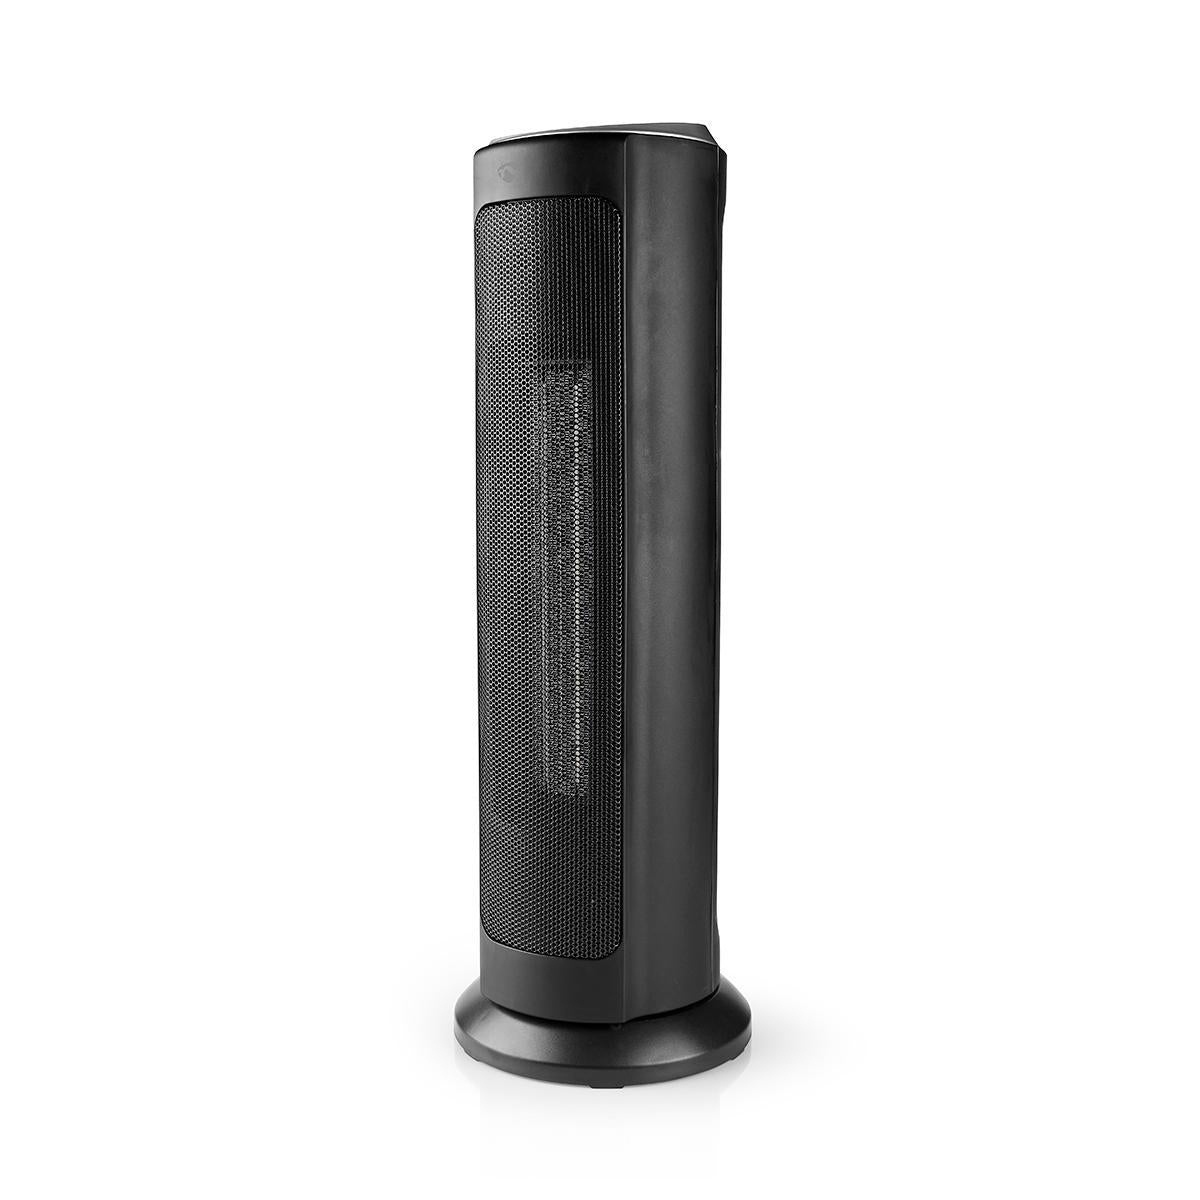 Nedis SmartLife Aquecedor com ventilador Wifi | Torre | 2000 W | 3 Definições de calor | Oscilação | Visor  Android™ / IOS | Preto